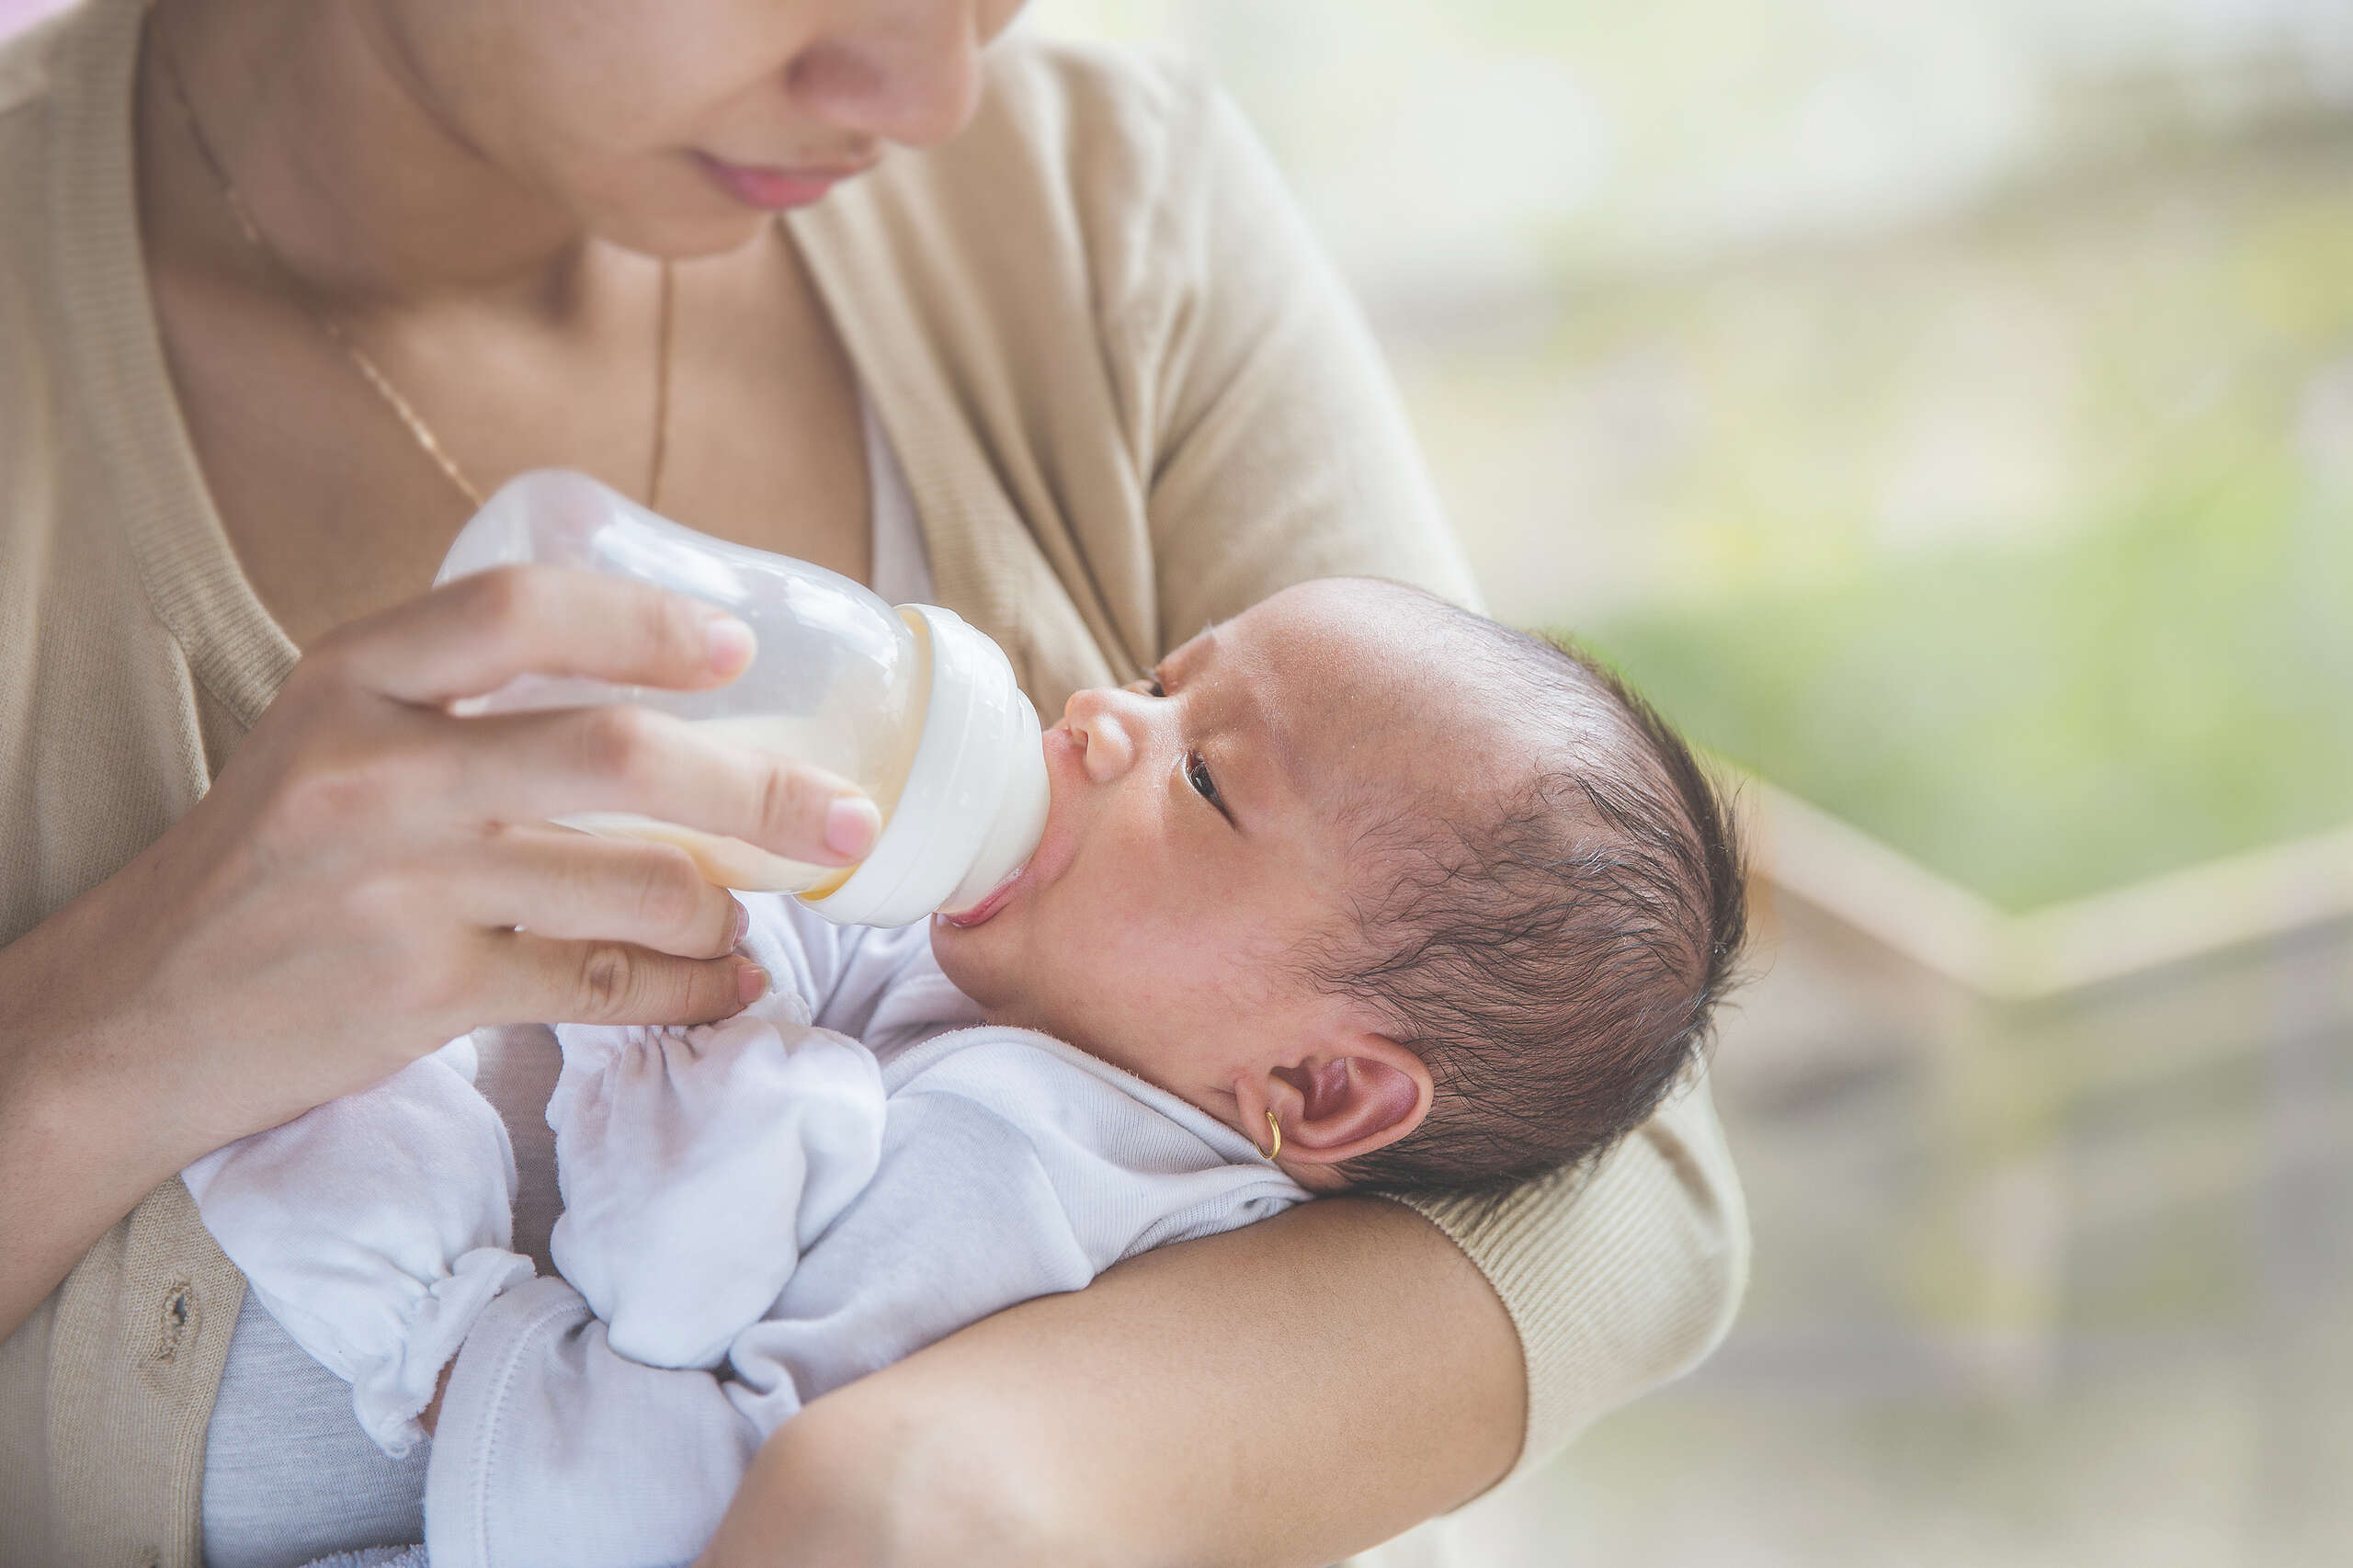 有些嬰兒奶瓶是由PC（Polycarbonate，中文是「聚碳酸酯」）製成，但PC可能含有雙酚A（BPA），危害寶寶健康。